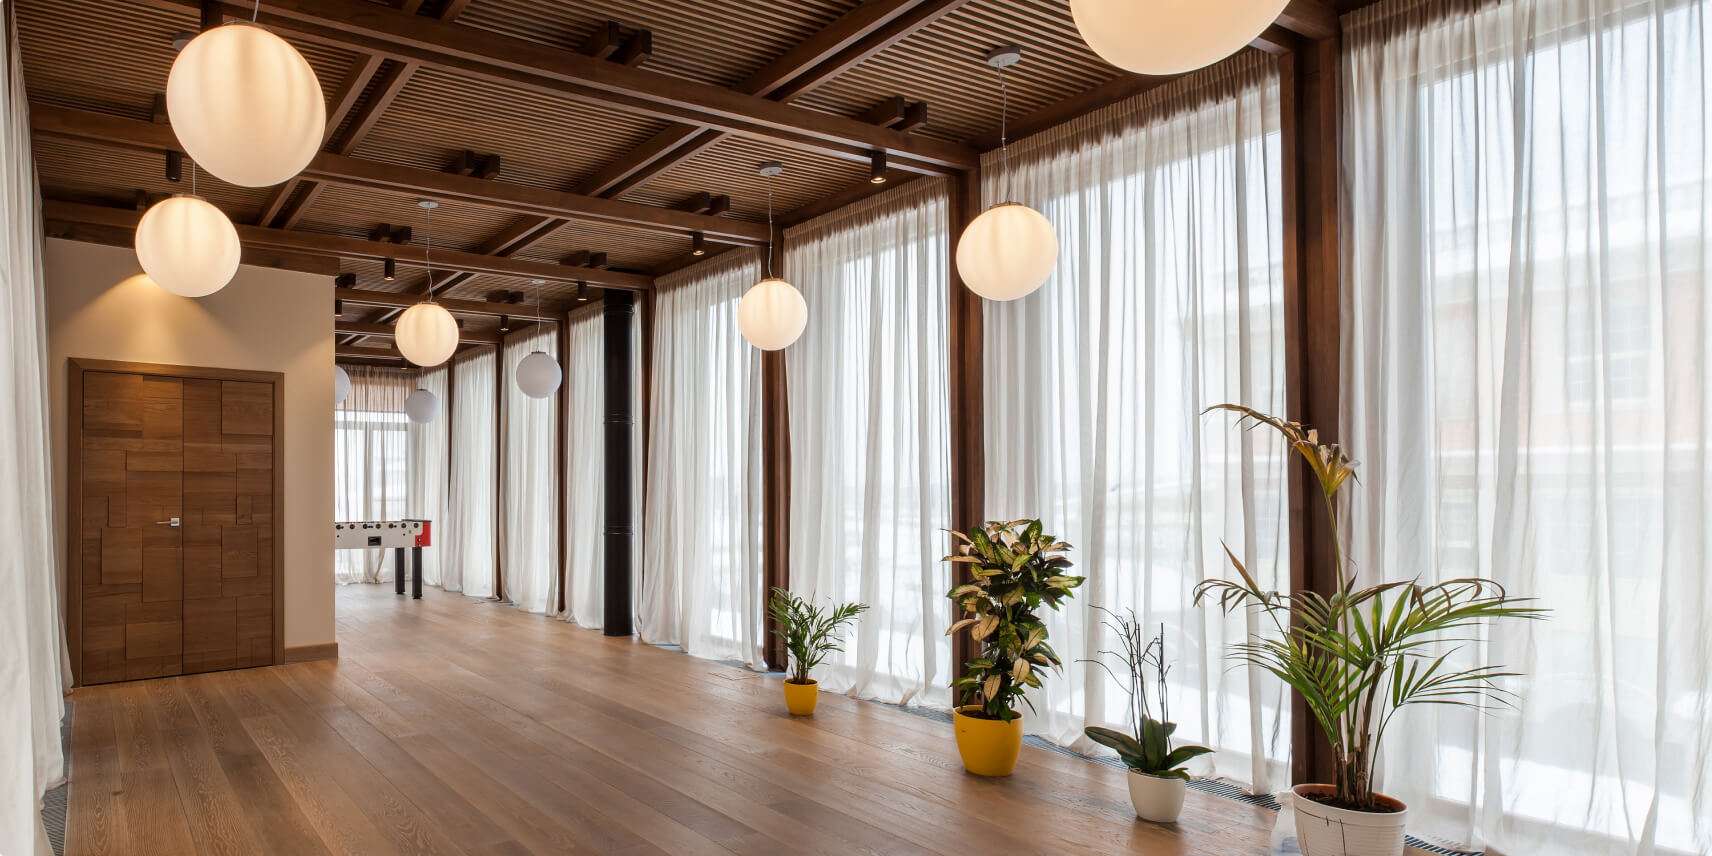 150 лучших фото идей для дизайна интерьера зала